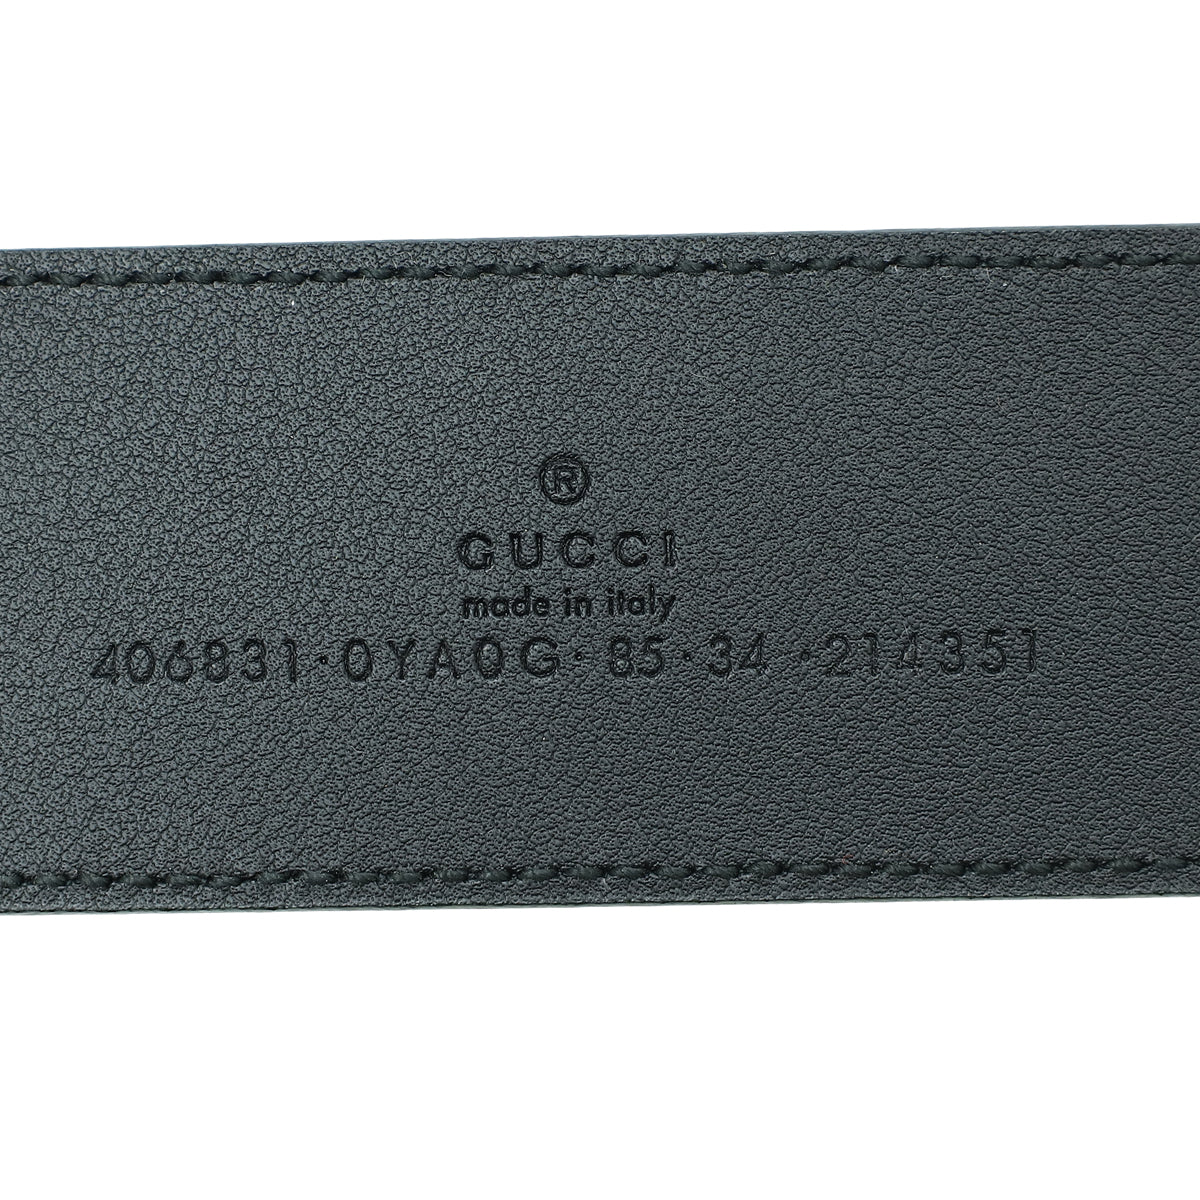 Gucci Black Double G Buckle Belt 34